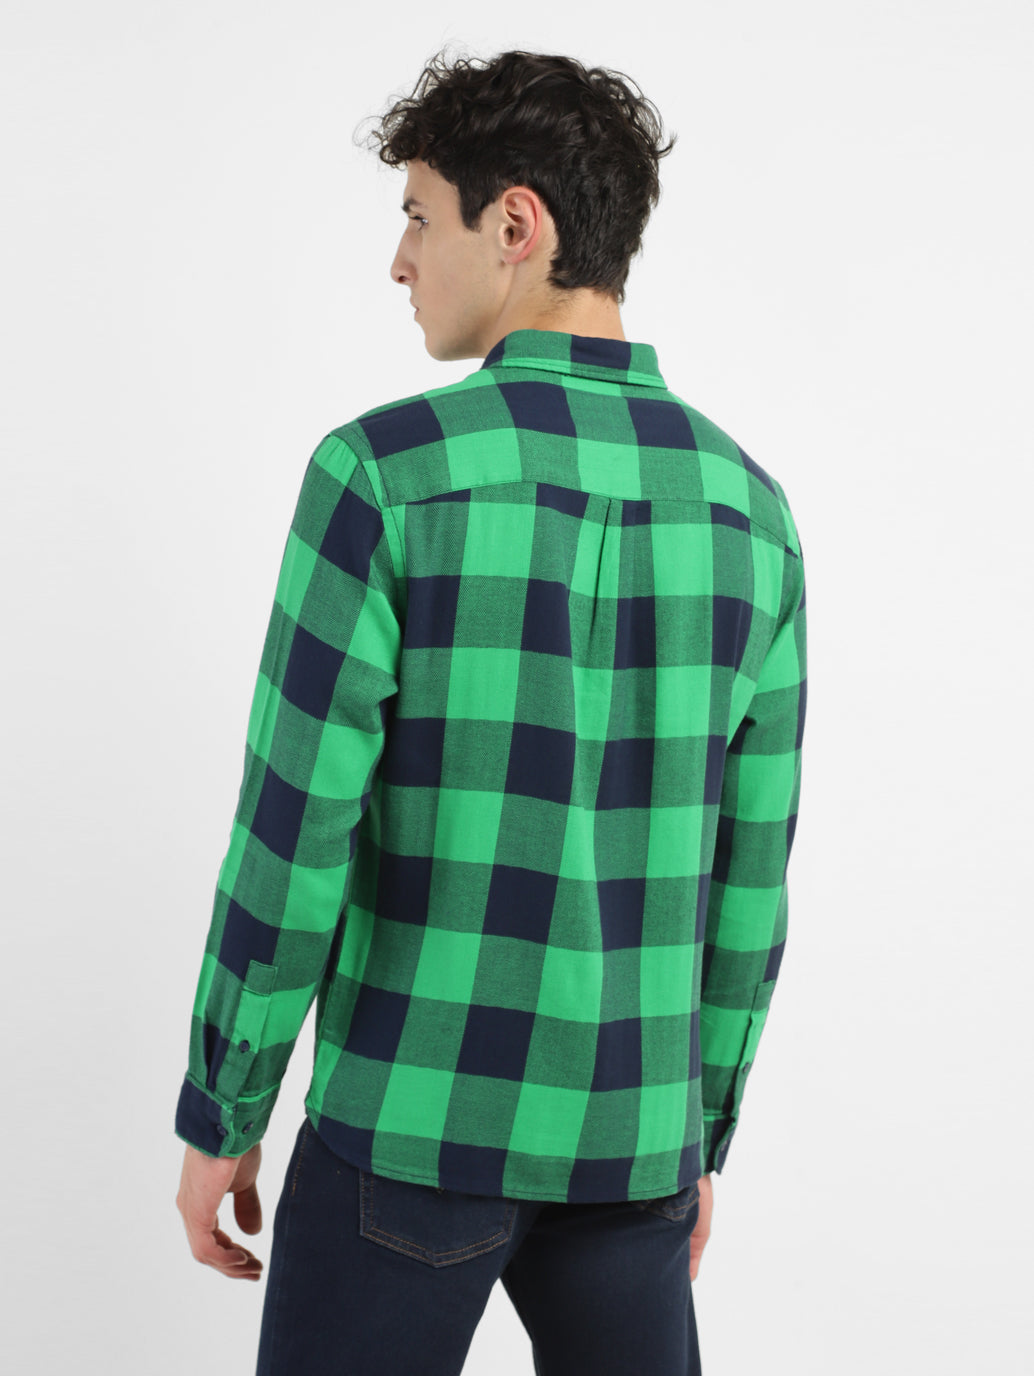 Men's Checkered Spread Collar Shirt